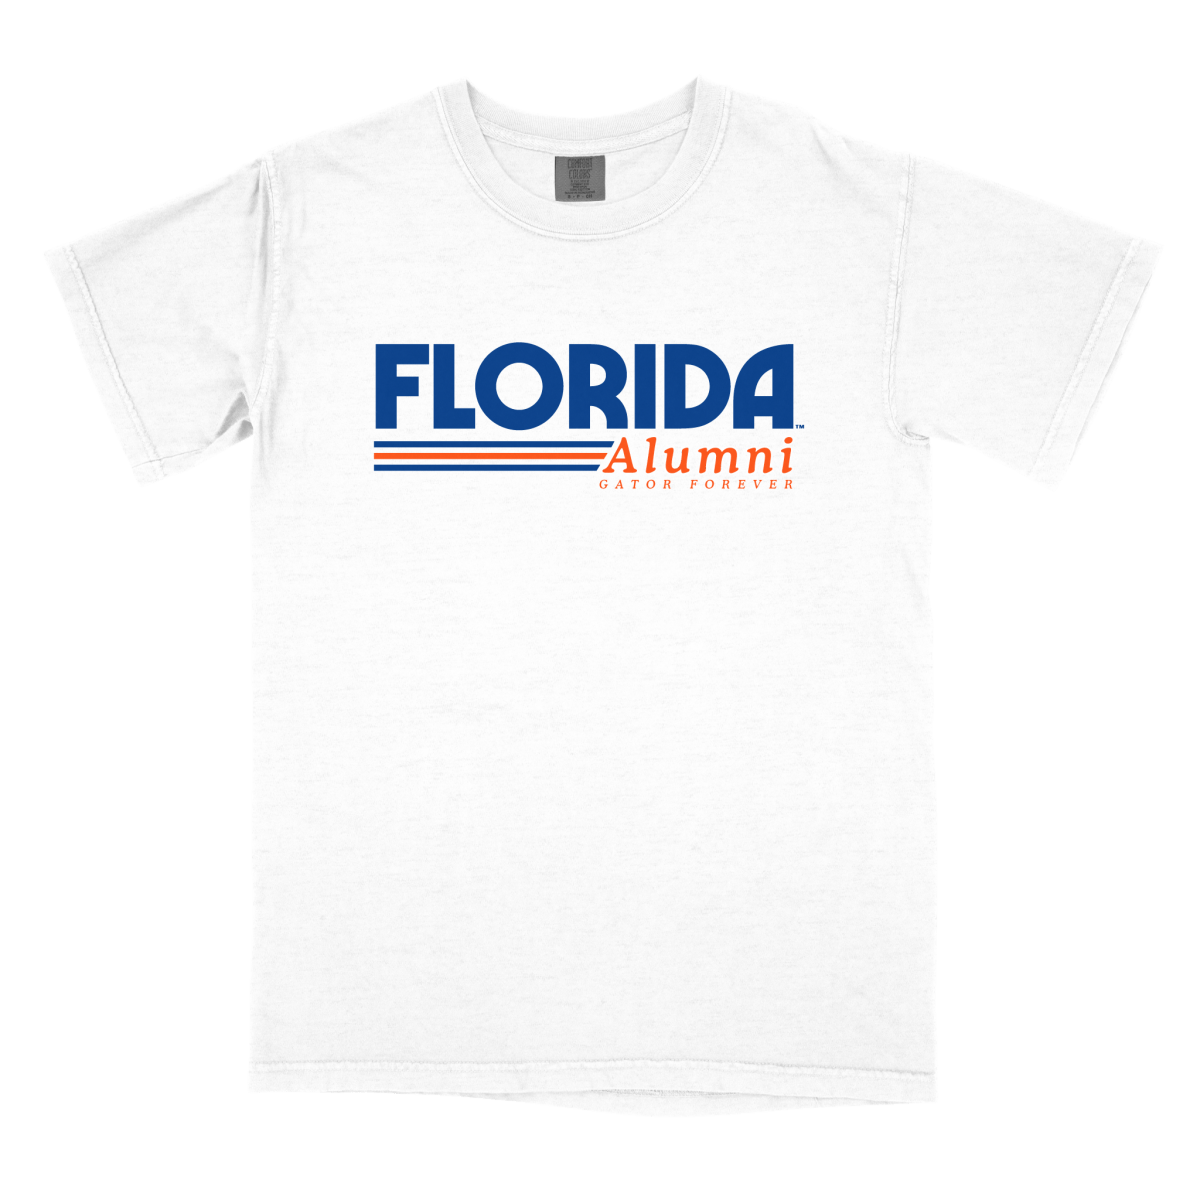 Florida Alumni Forever - Shop B-Unlimited